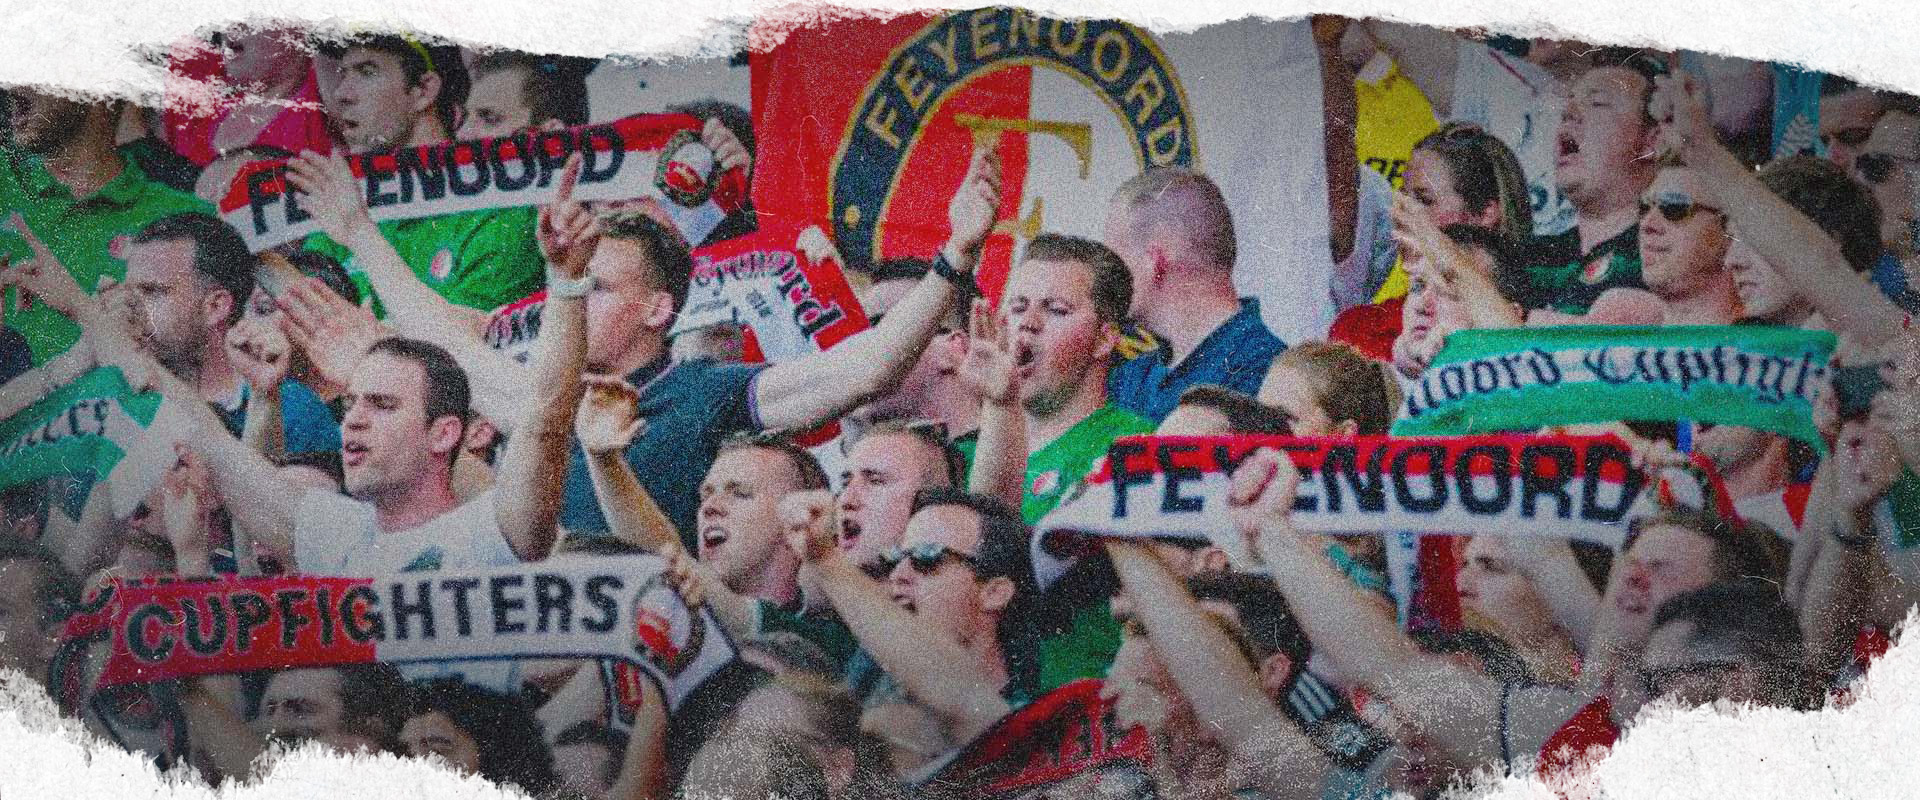 Feyenoord fans celebrating